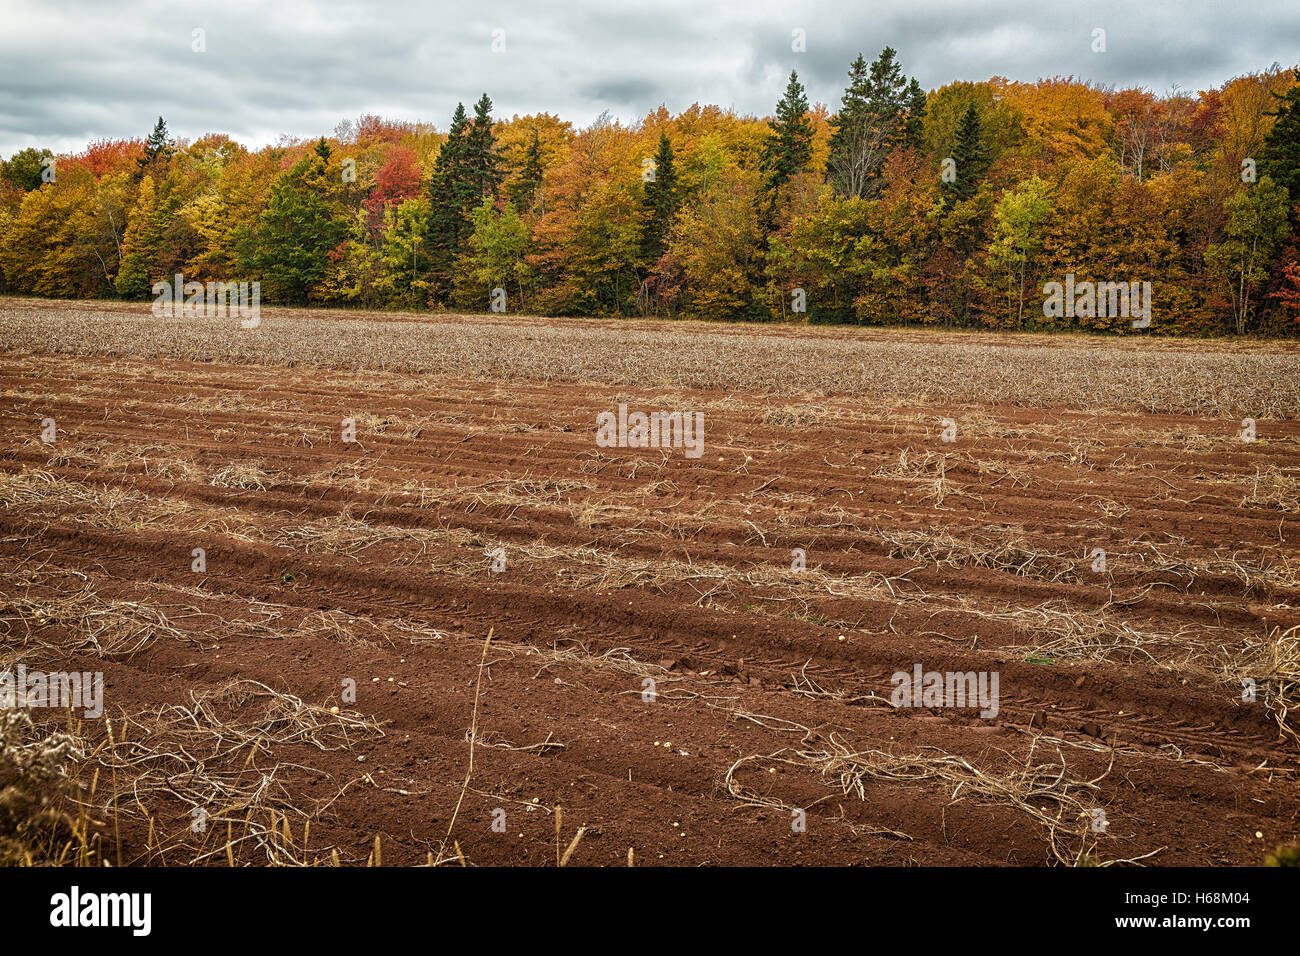 Un champ après la récolte de pommes de terre dans les régions rurales de l'Île du Prince-Édouard, Canada. Banque D'Images